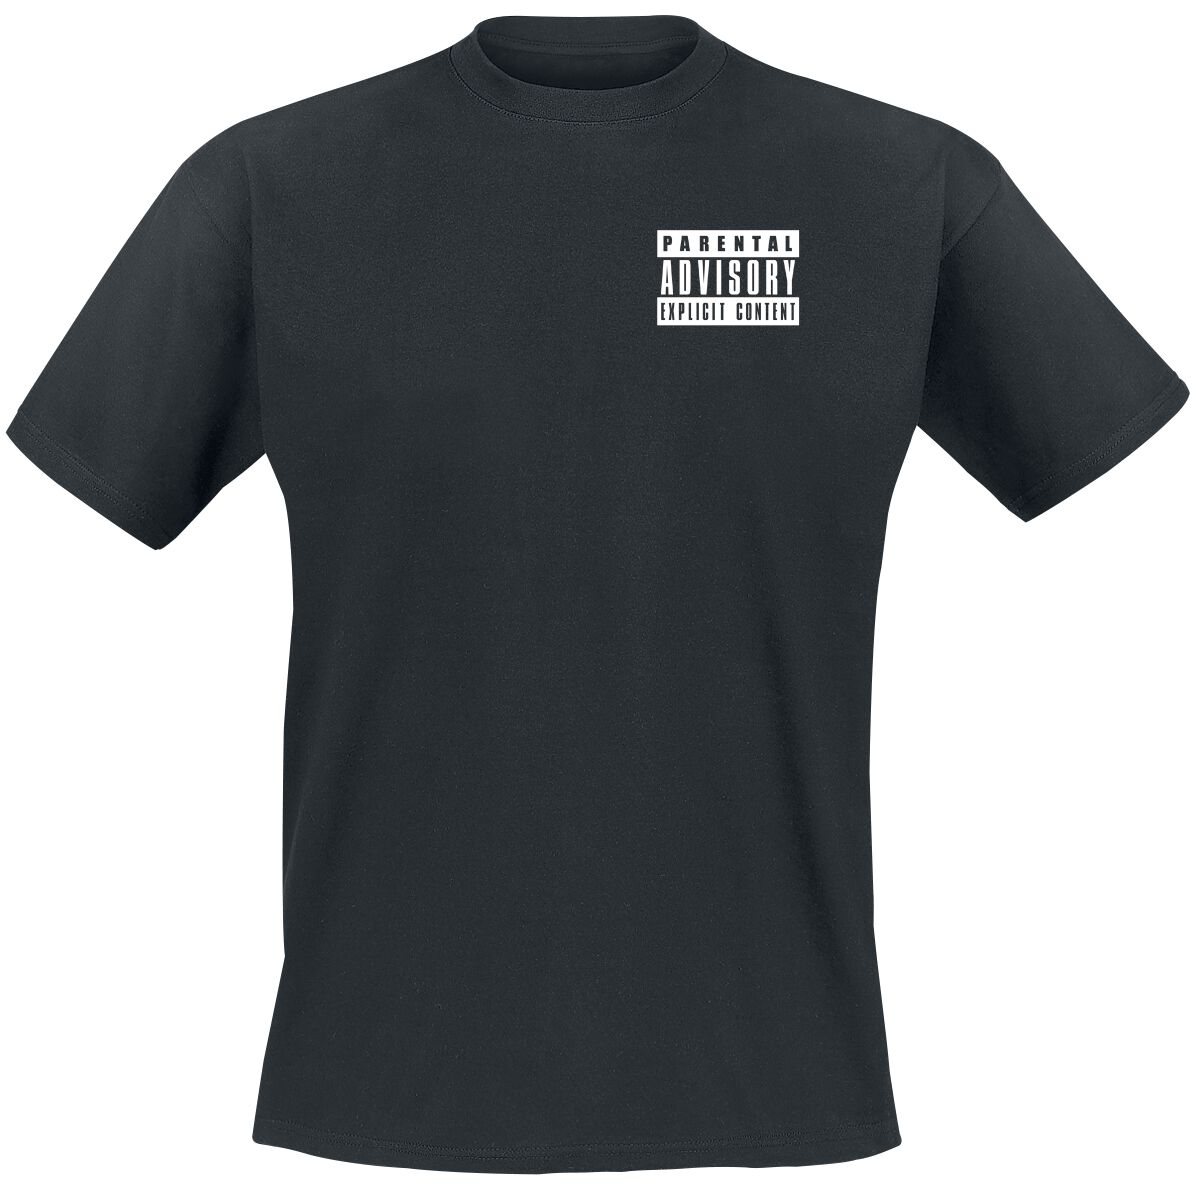 Parental Advisory T-Shirt - Classic Logo - S bis M - für Männer - Größe M - schwarz  - Lizenziertes Merchandise!